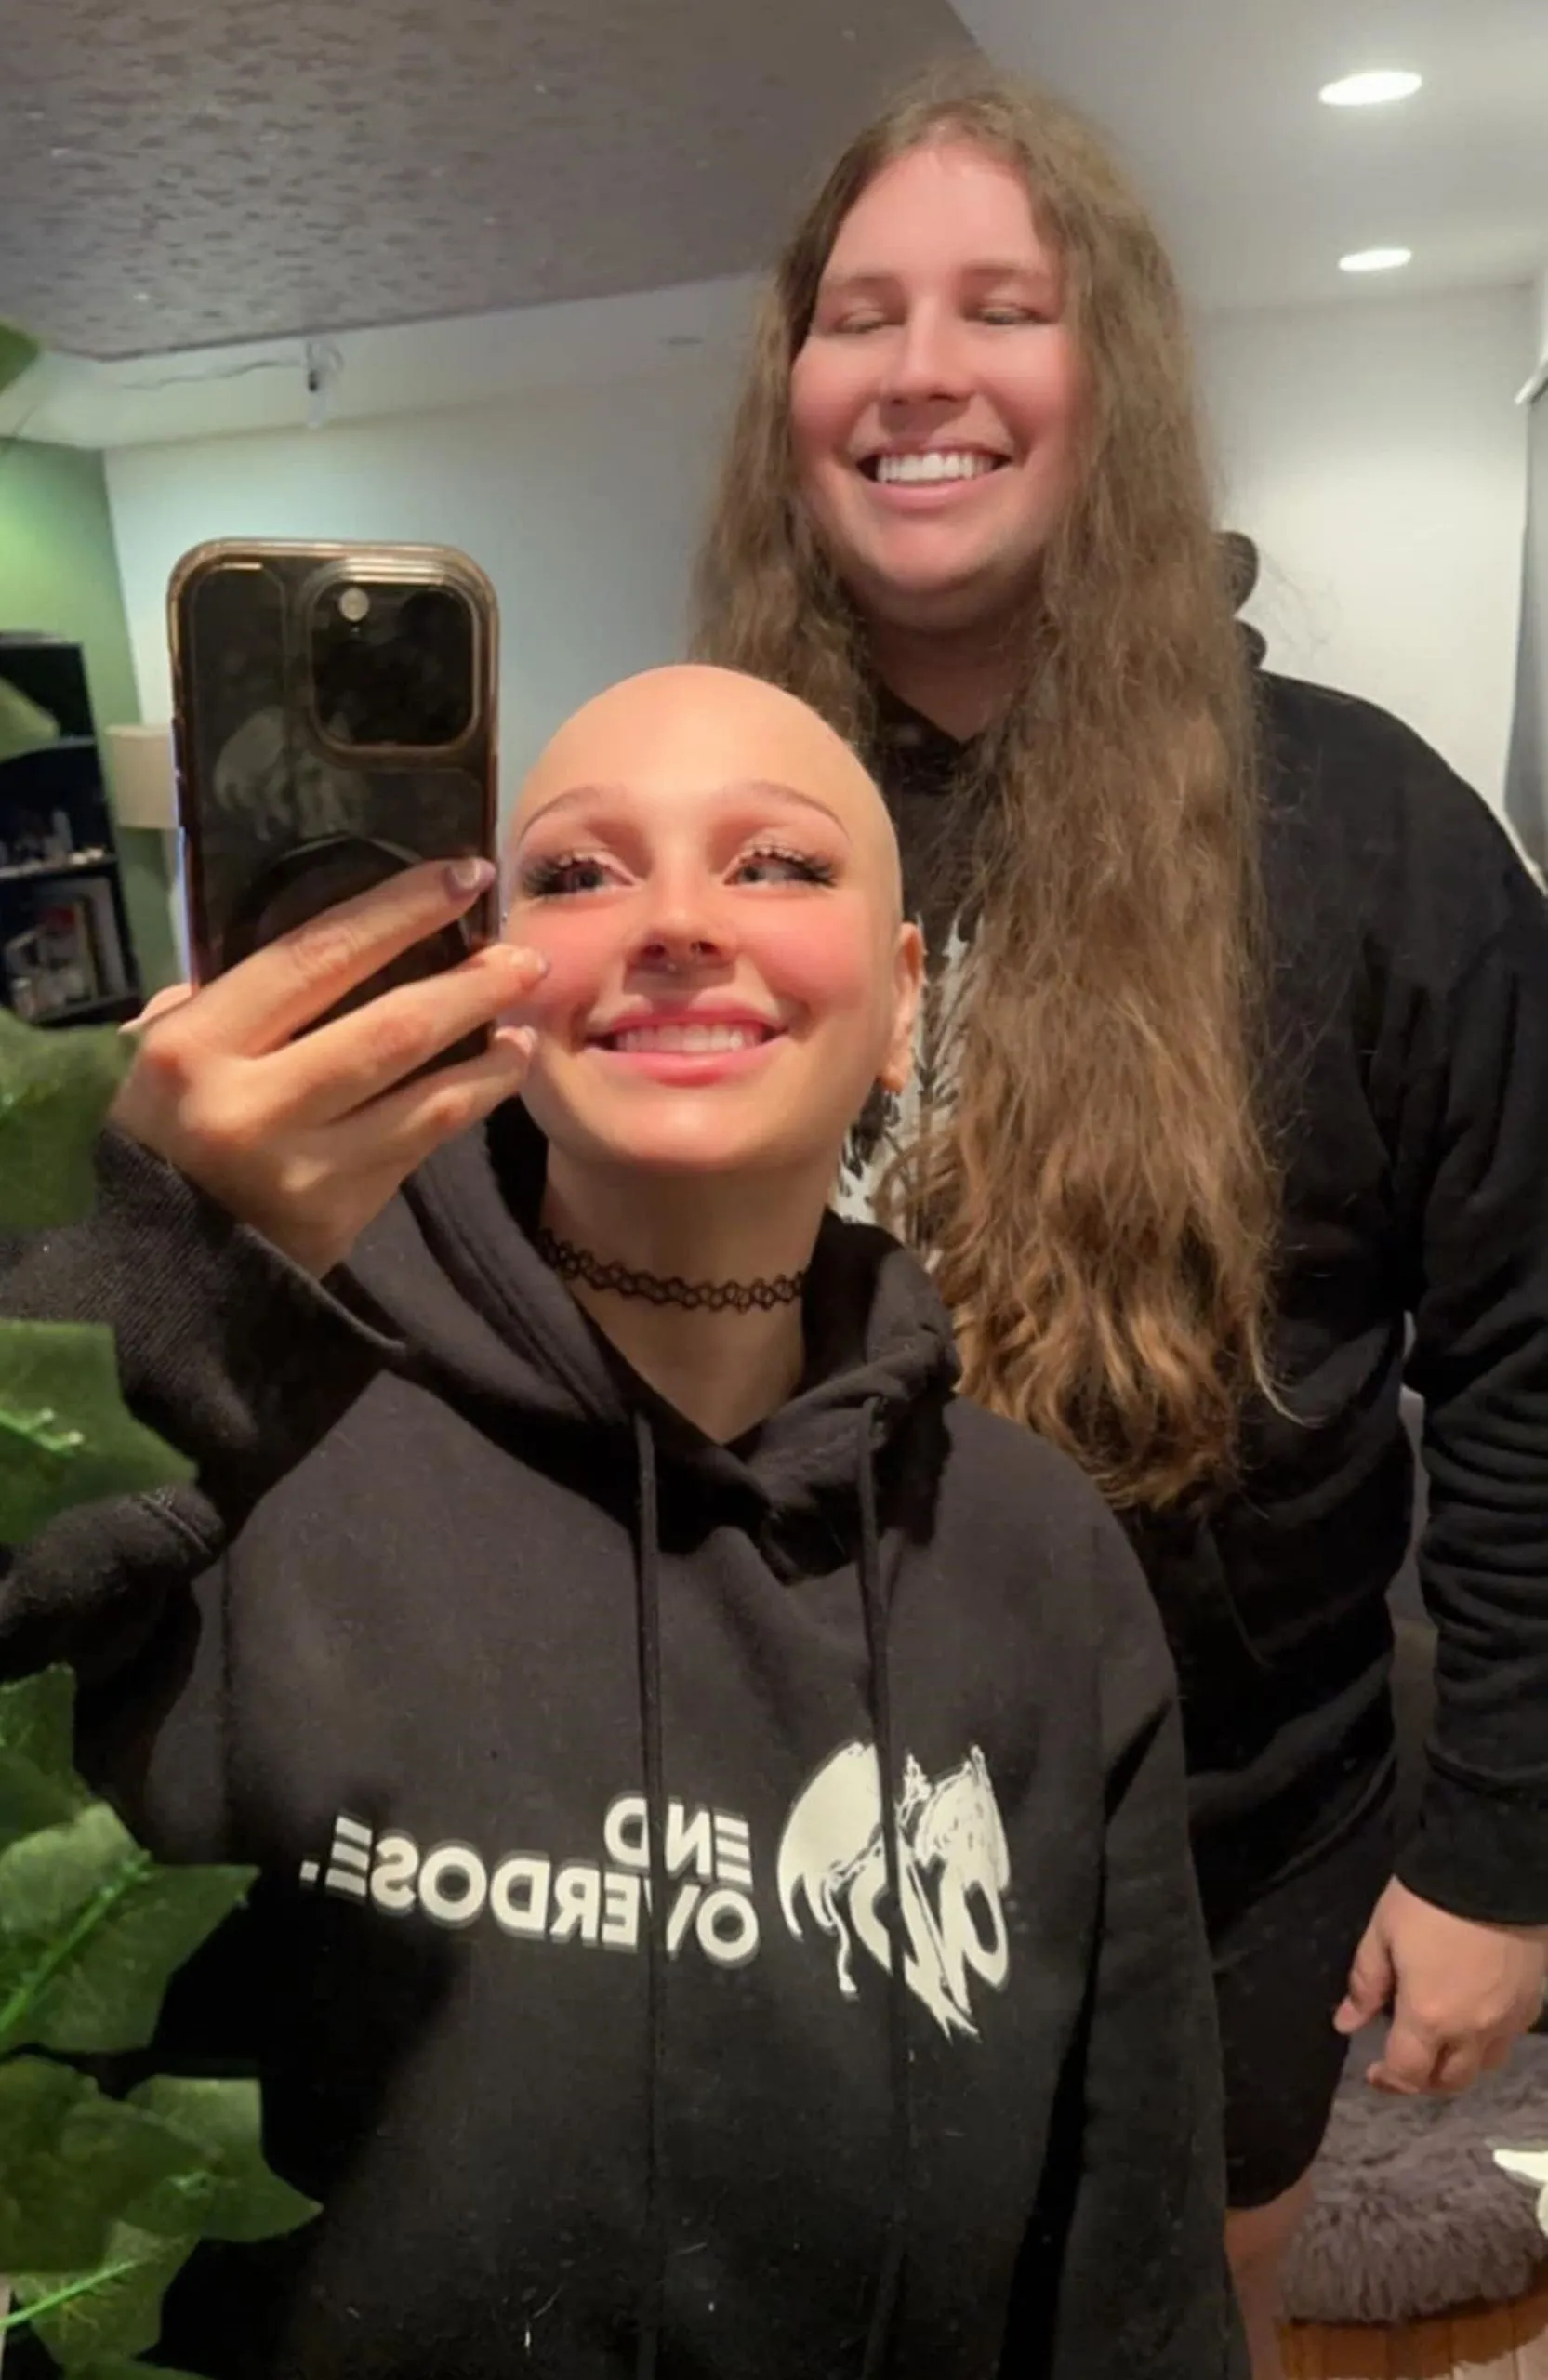 Man Grows Hair for his Girlfriend